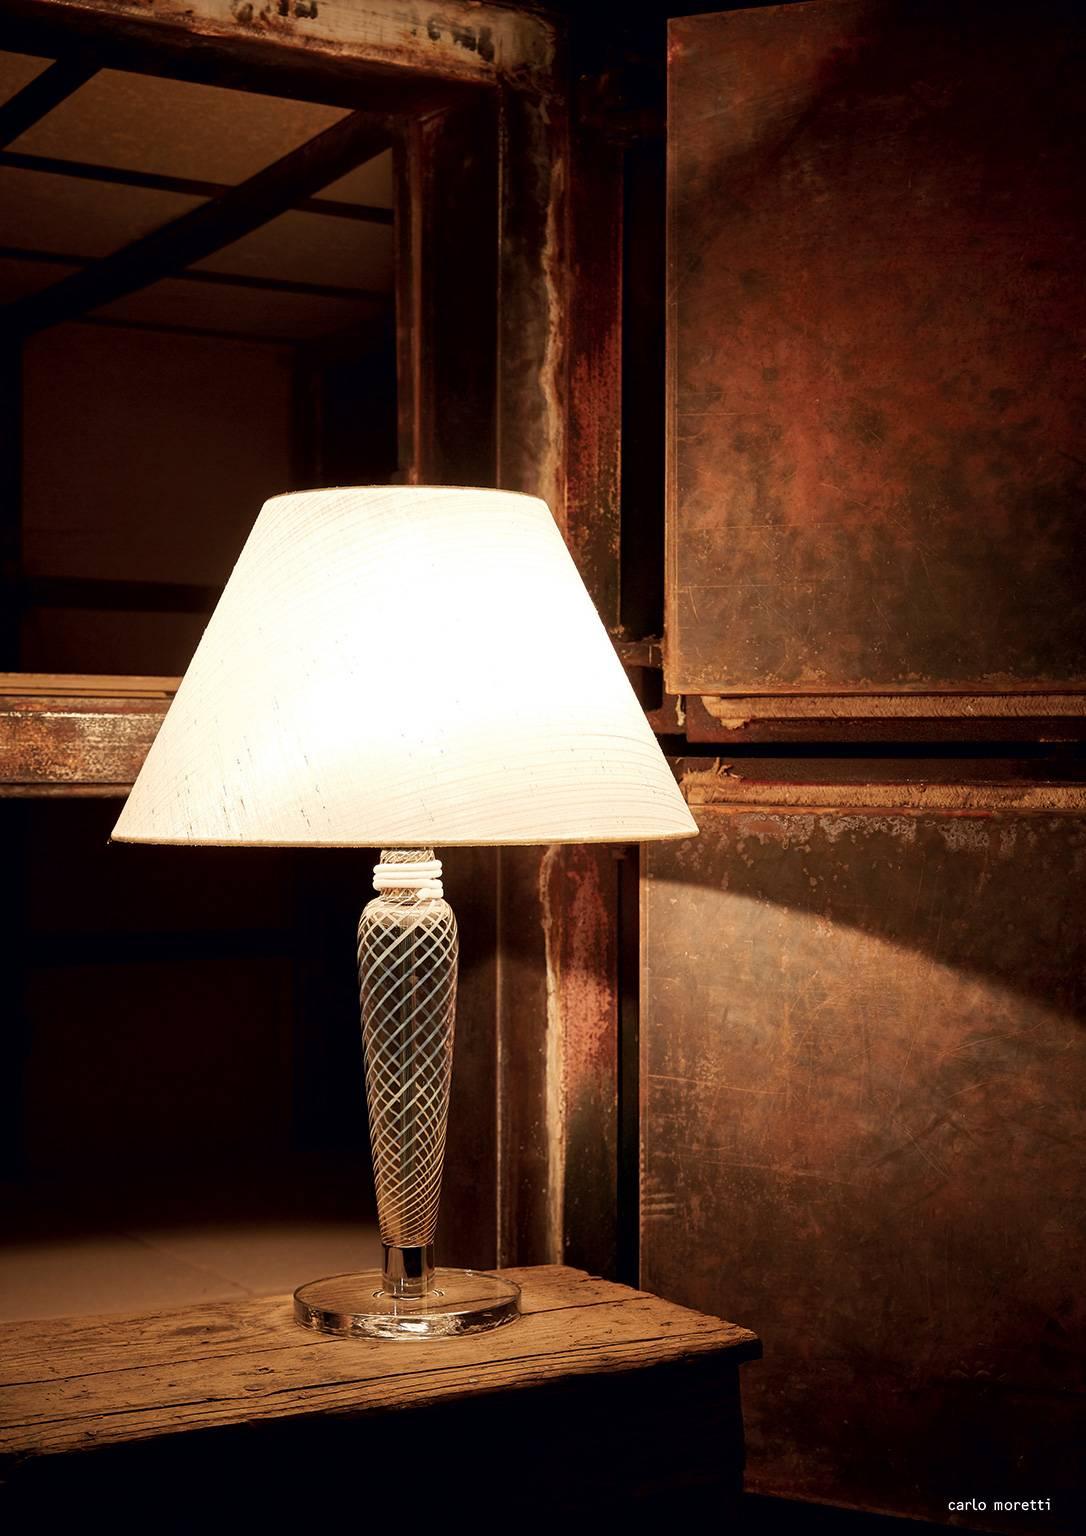 Lampe de table avec colonne en verre de Murano, base en verre transparent en spirale gris/blanc, abat-jour en tissu de forme tronconique et fixations en métal en chrome poli. La lampe a été conçue par Carlo Moretti en 1995.


Carlo Moretti : Une